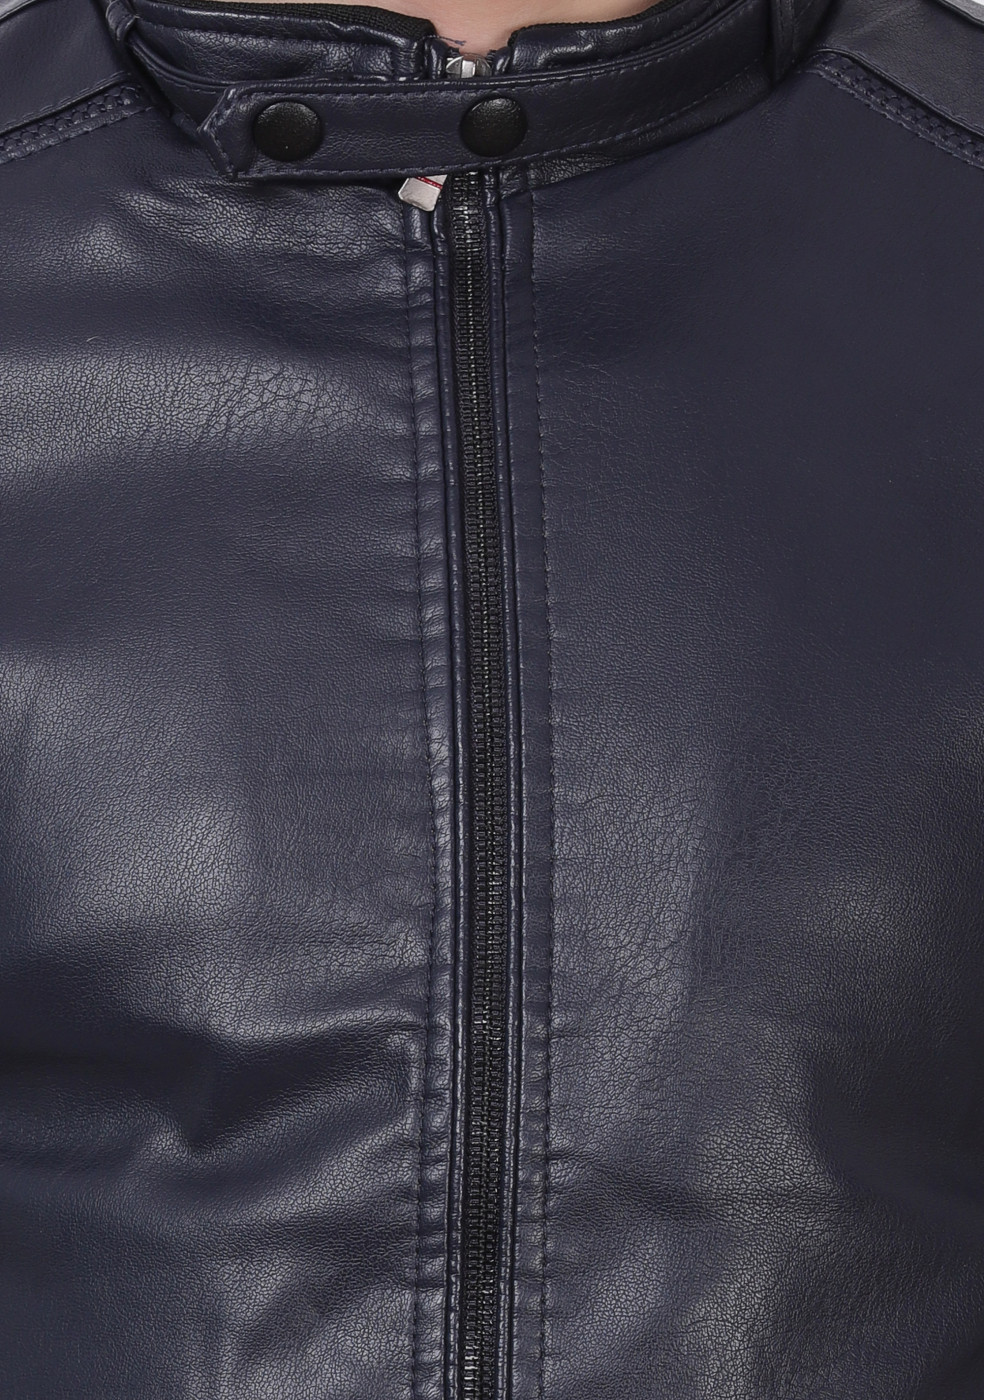 Men Blue Leather Jacket